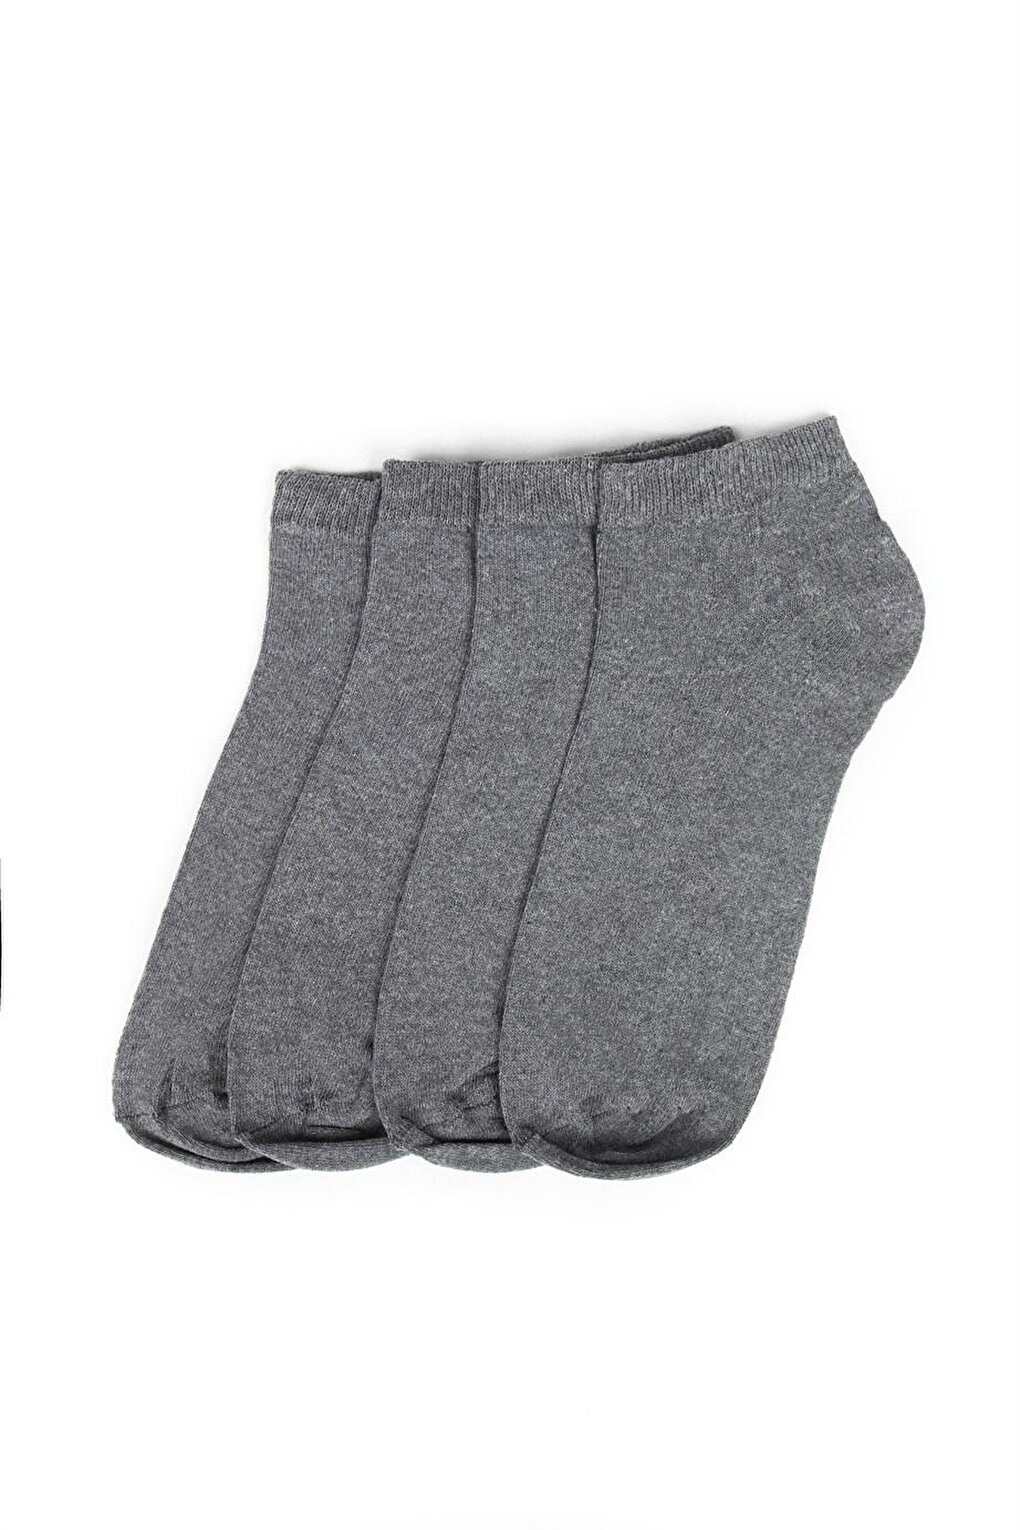 Комплект из 2 мужских носков TUDORS, копченый